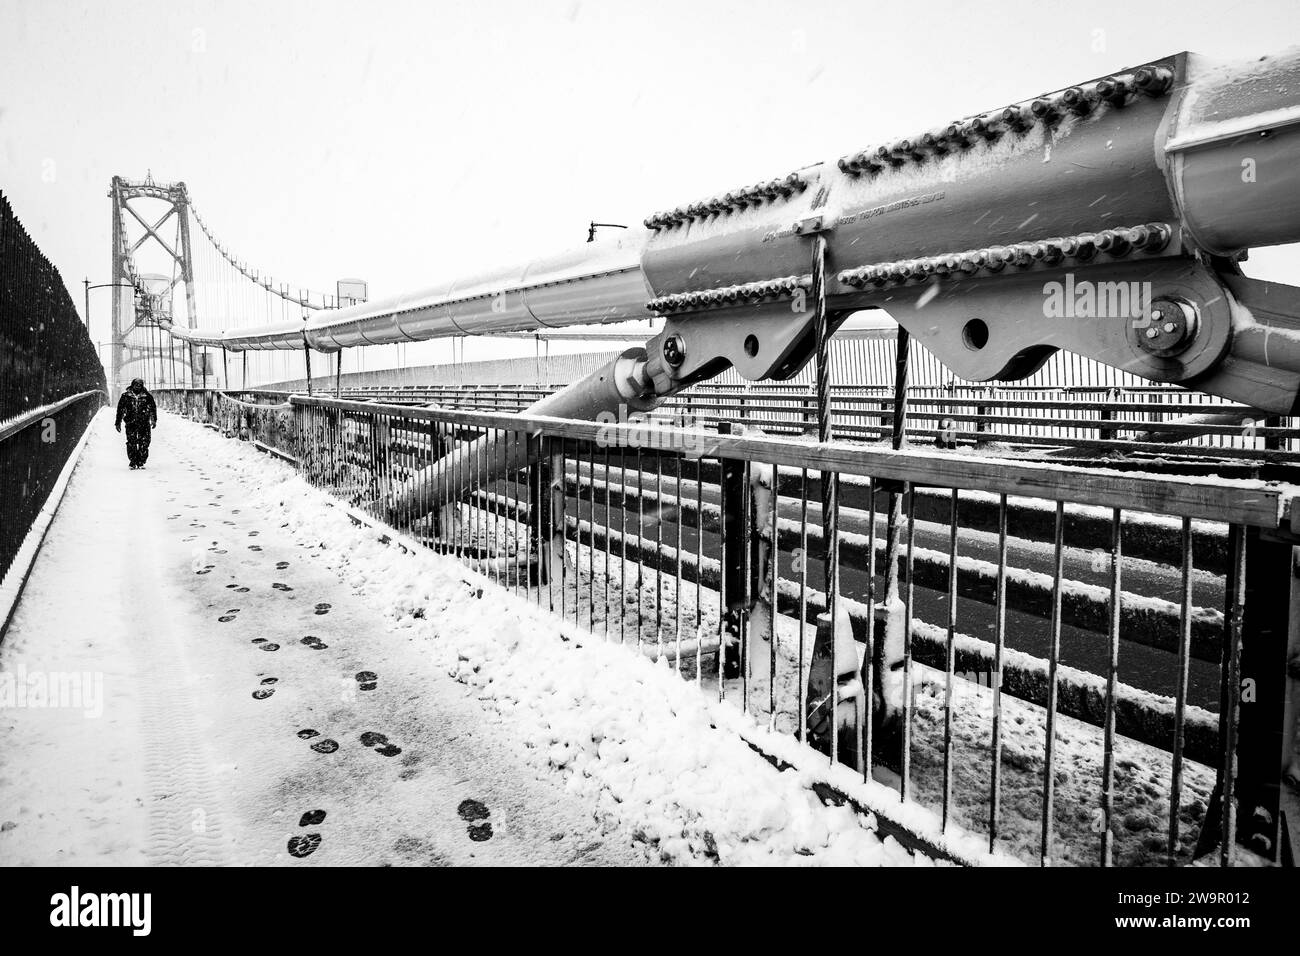 Attraversamento pedonale del ponte Angus L Macdonald durante una tempesta di neve ad Halifax, nuova Scozia, Canada. Foto Stock